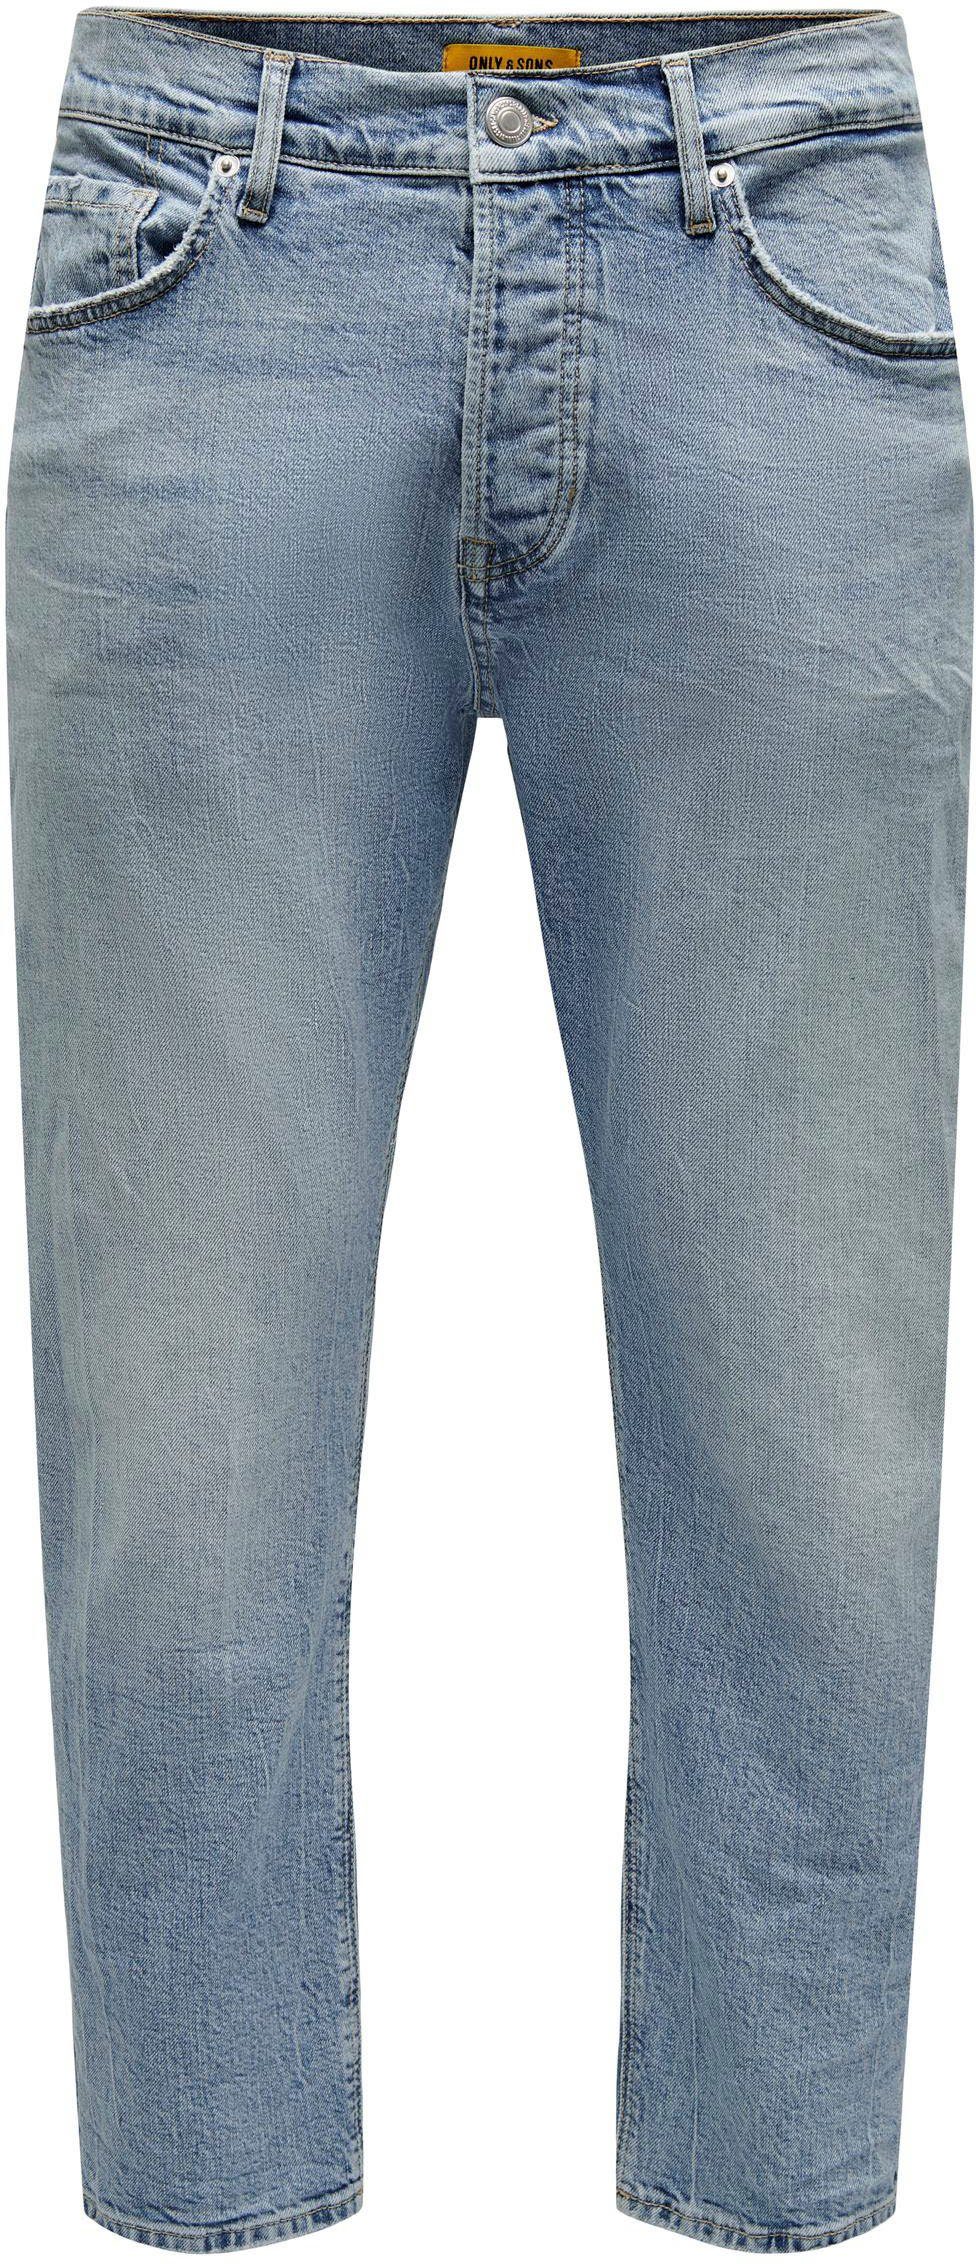 ONLY & SONS 5-Pocket-Jeans ONSAVI COMFORT L. BLUE 4934 JEANS NOOS light blue